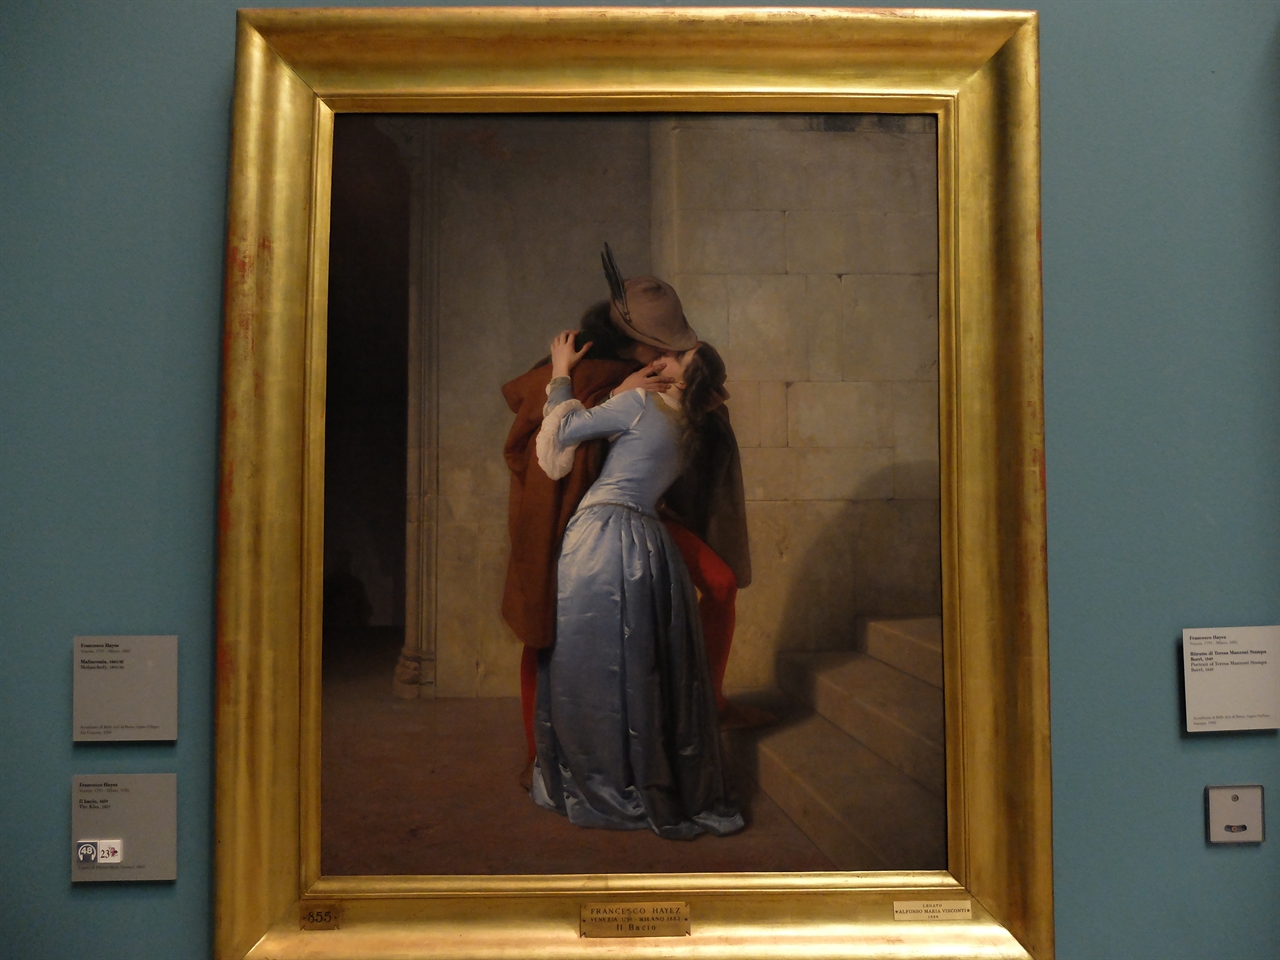 프란체스코 하예즈, '키스', 밀라노 브레라 미술관. 신고전주의에서 낭만주의로의 이행에 결정적인 역할을 한 하예즈의 '키스'는 제목처럼 강렬하게 다가옵니다.